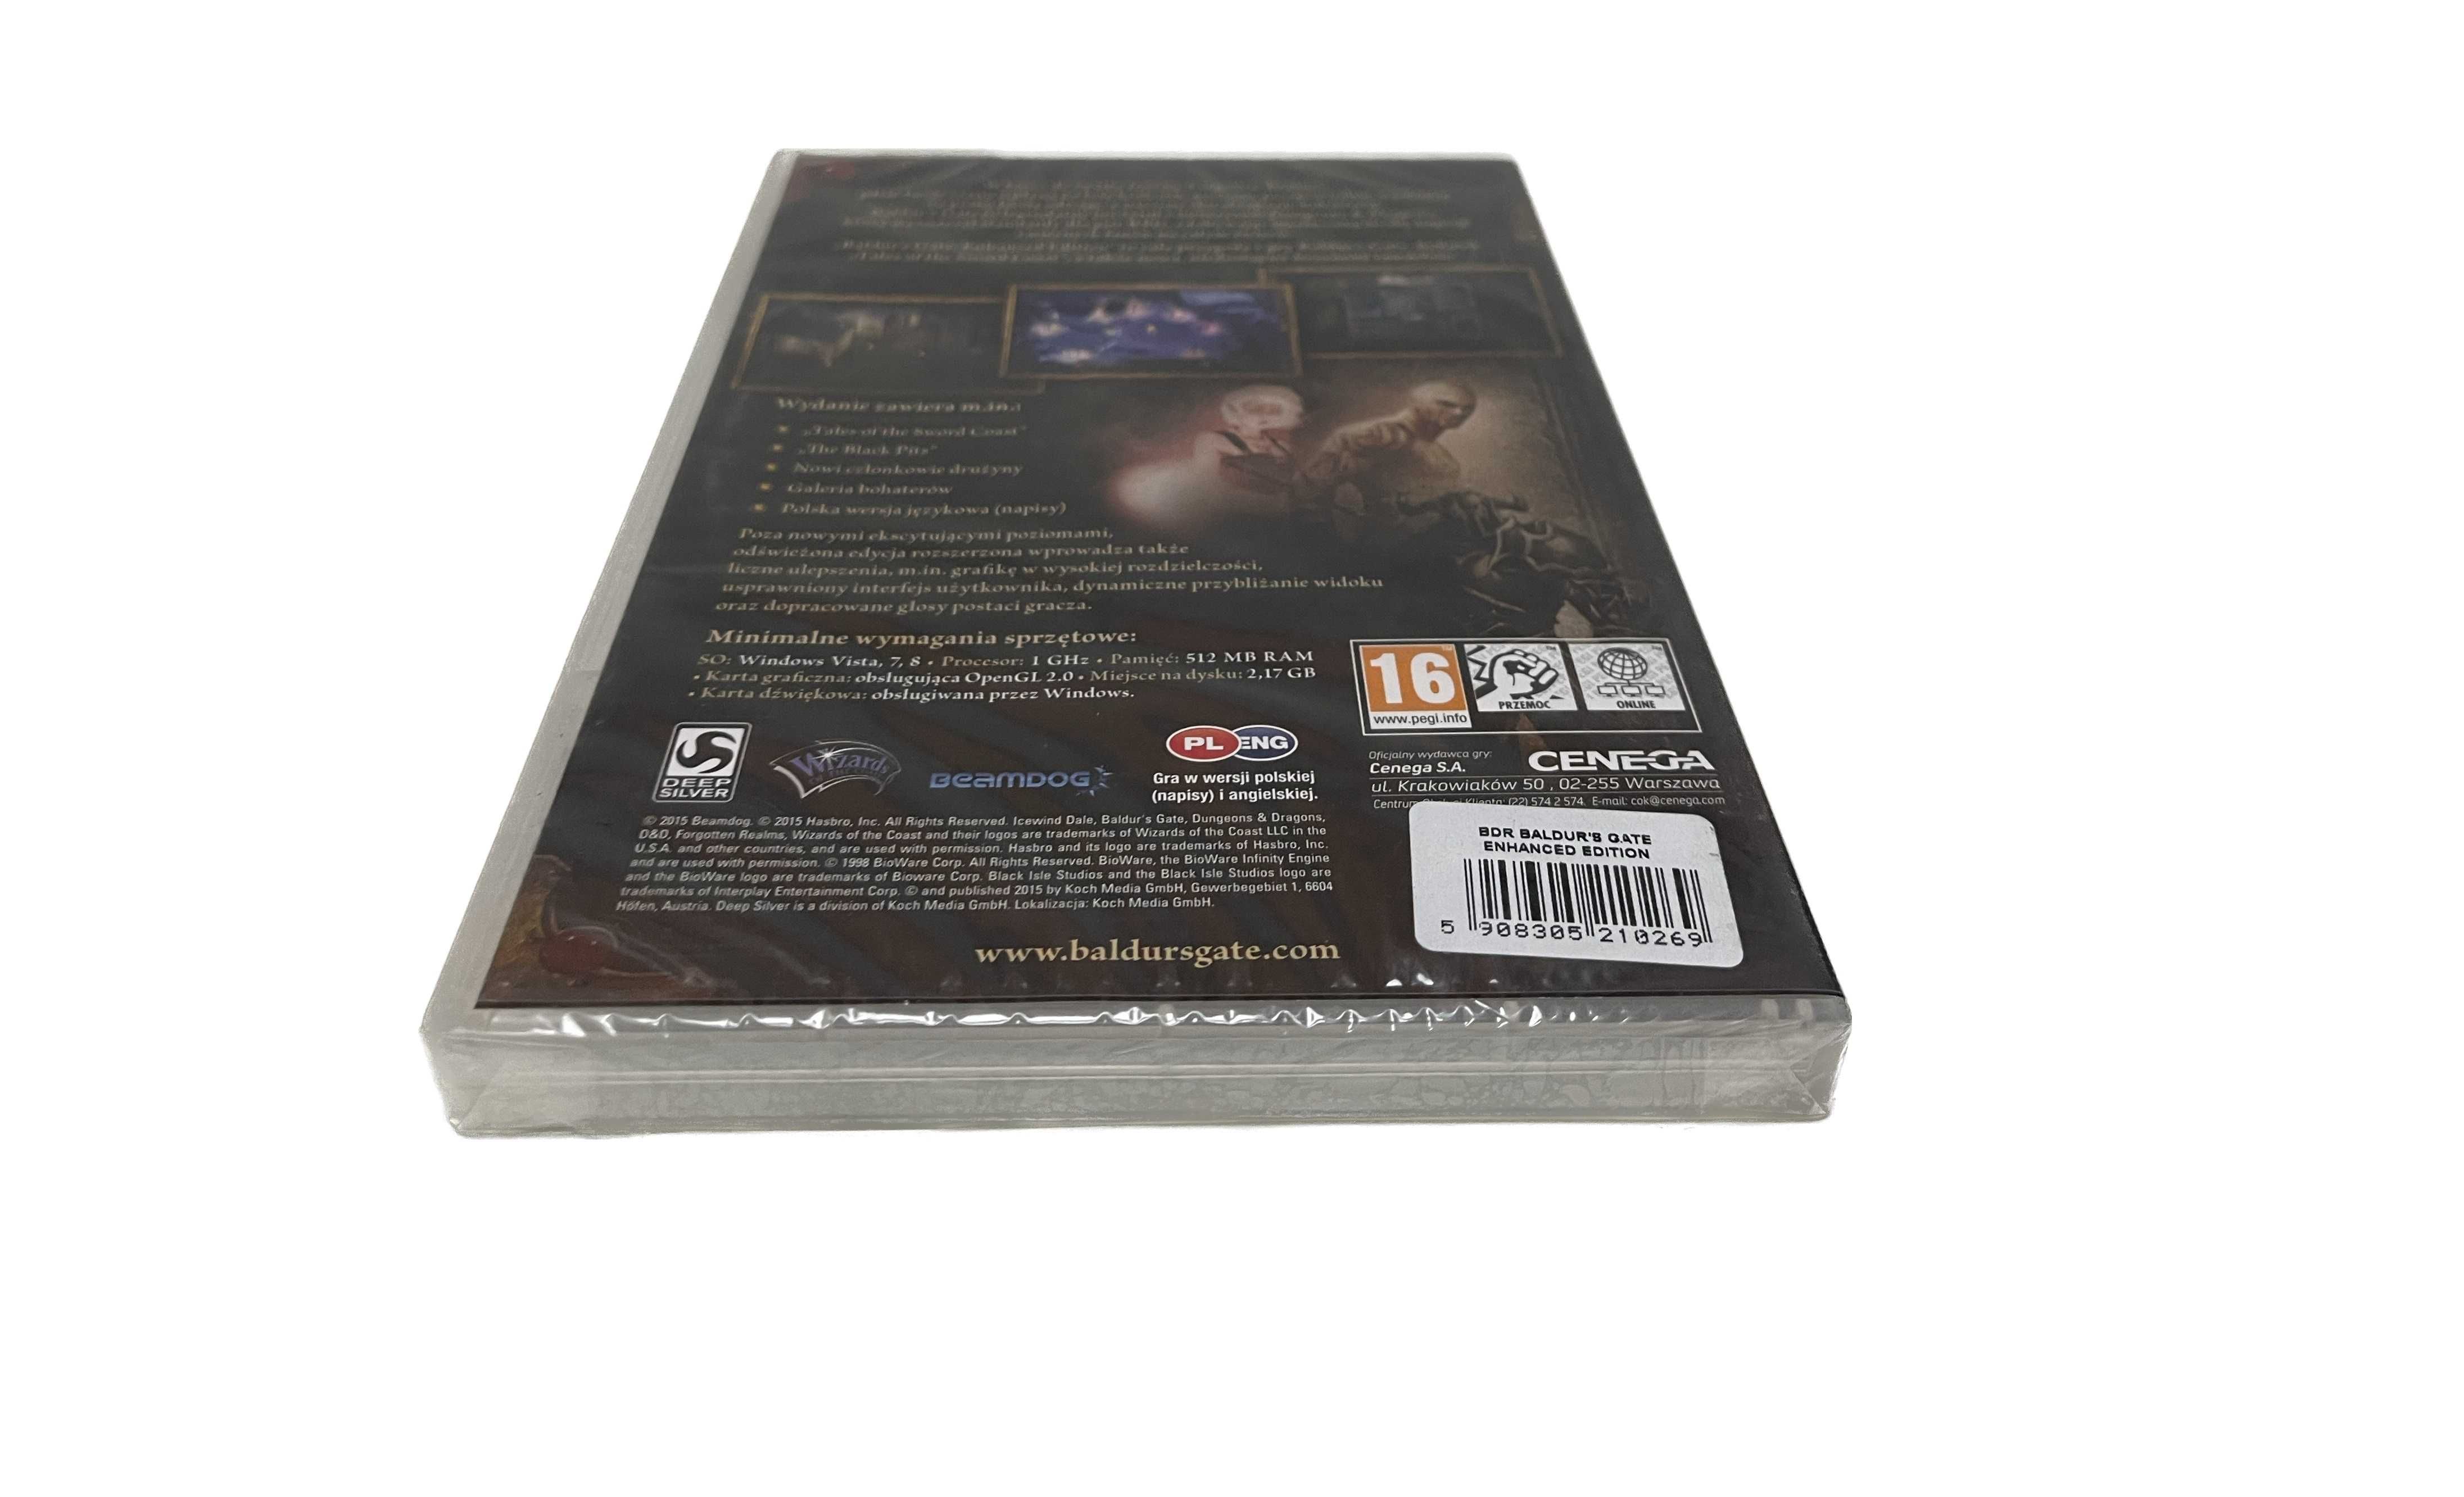 Baldur's Gate: Enhanced Edition PC